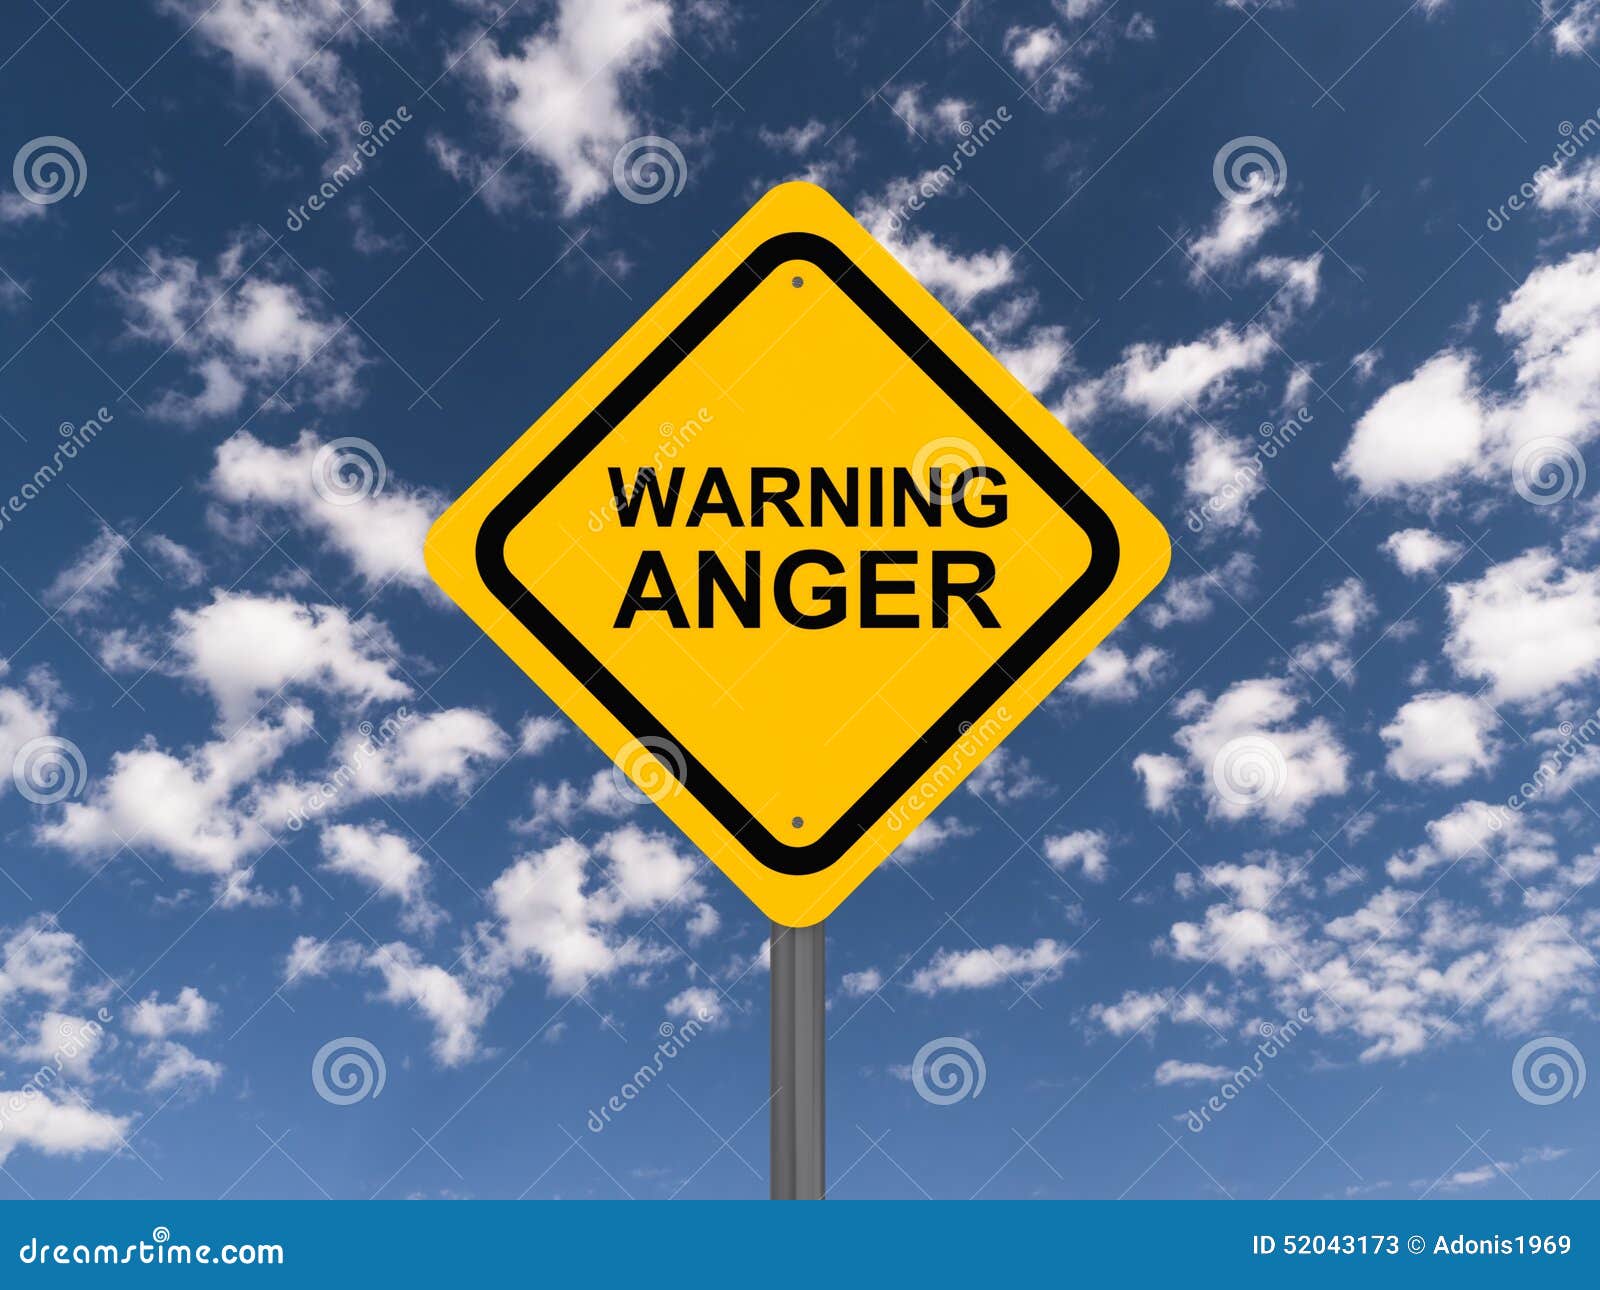 anger warning sign